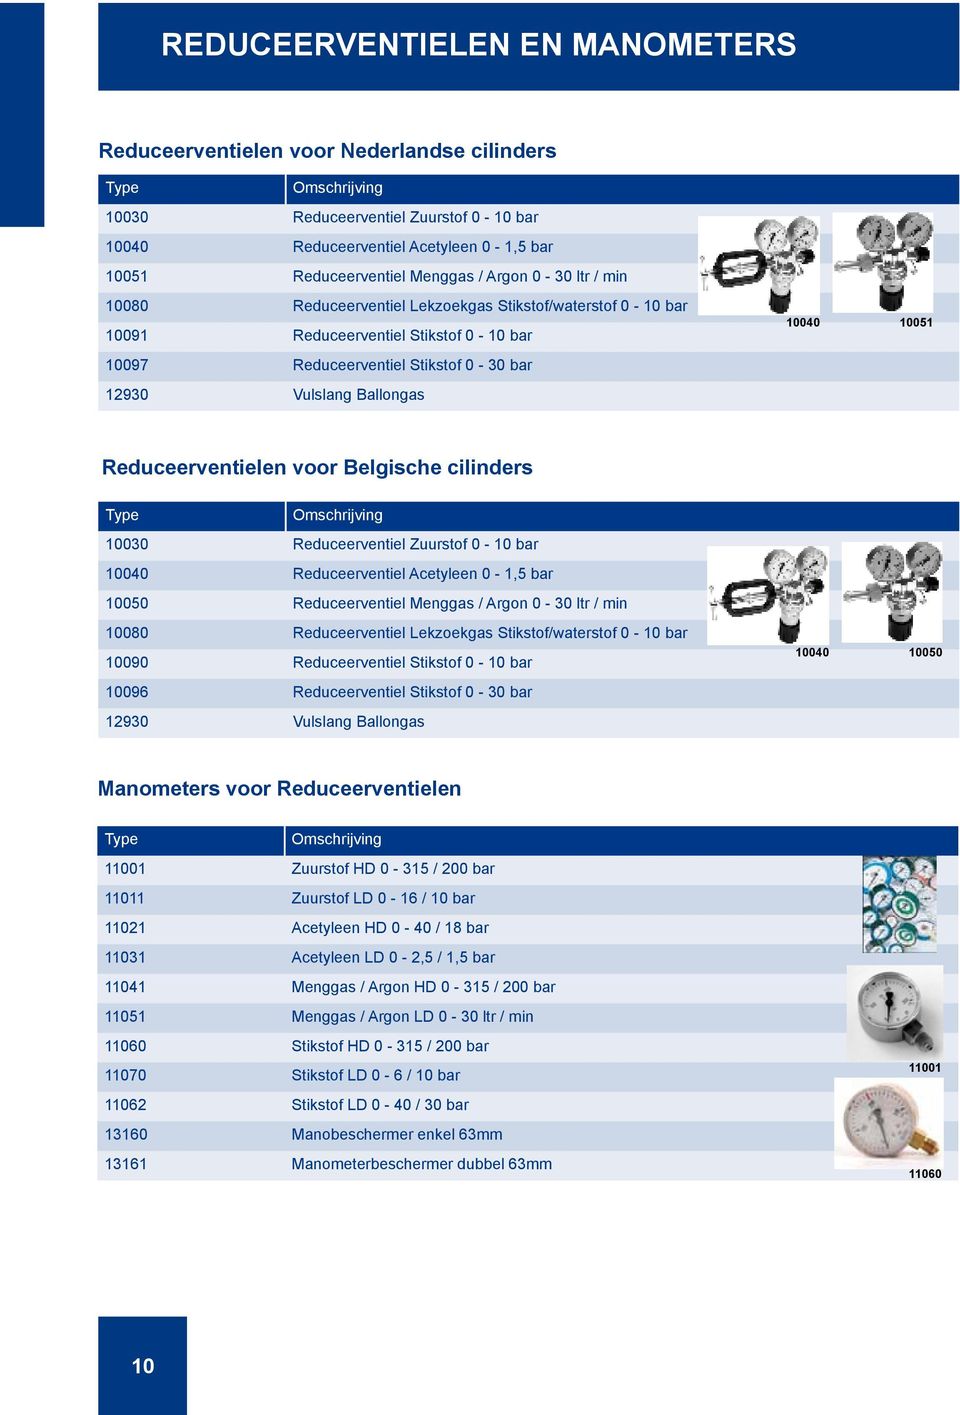 Reduceerventielen voor Belgische cilinders 10030 Reduceerventiel Zuurstof 0-10 bar 10040 Reduceerventiel Acetyleen 0-1,5 bar 10050 Reduceerventiel Menggas / Argon 0-30 ltr / min 10080 Reduceerventiel